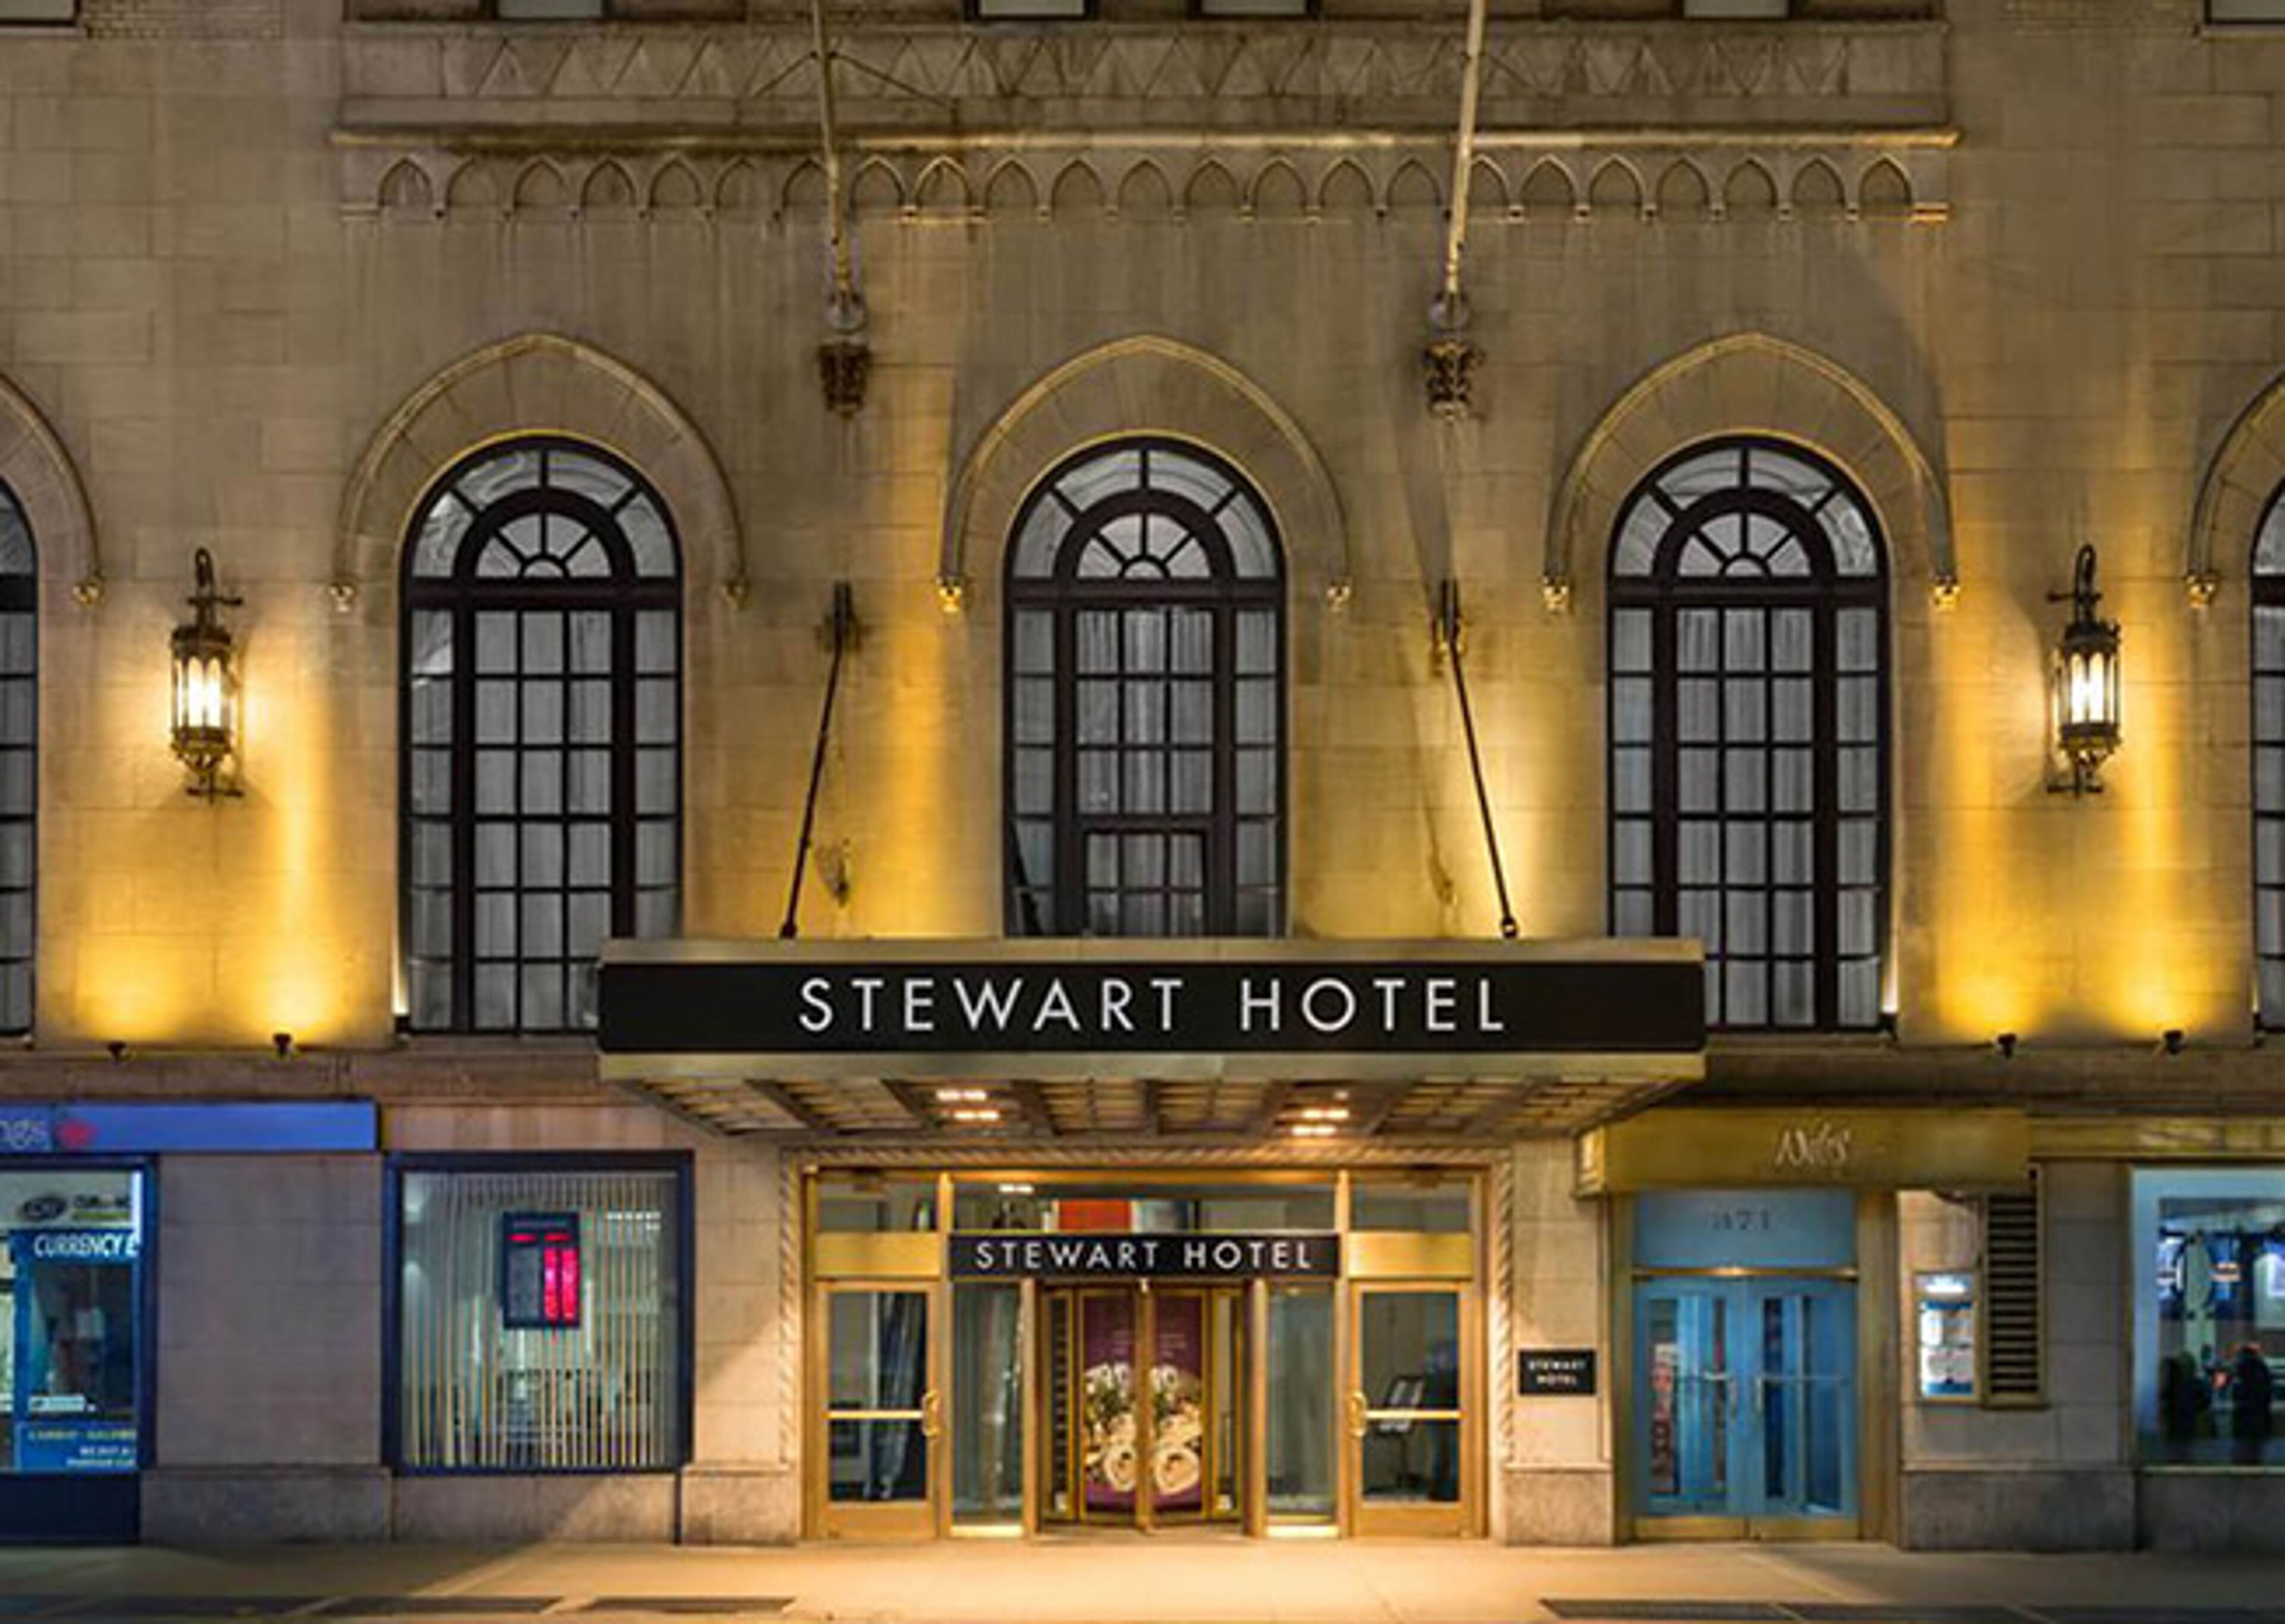 L'entrée illuminée de l'Hôtel Stewart, mettant en valeur son architecture classique avec des fenêtres voûtées et une esthétique vintage au crépuscule.